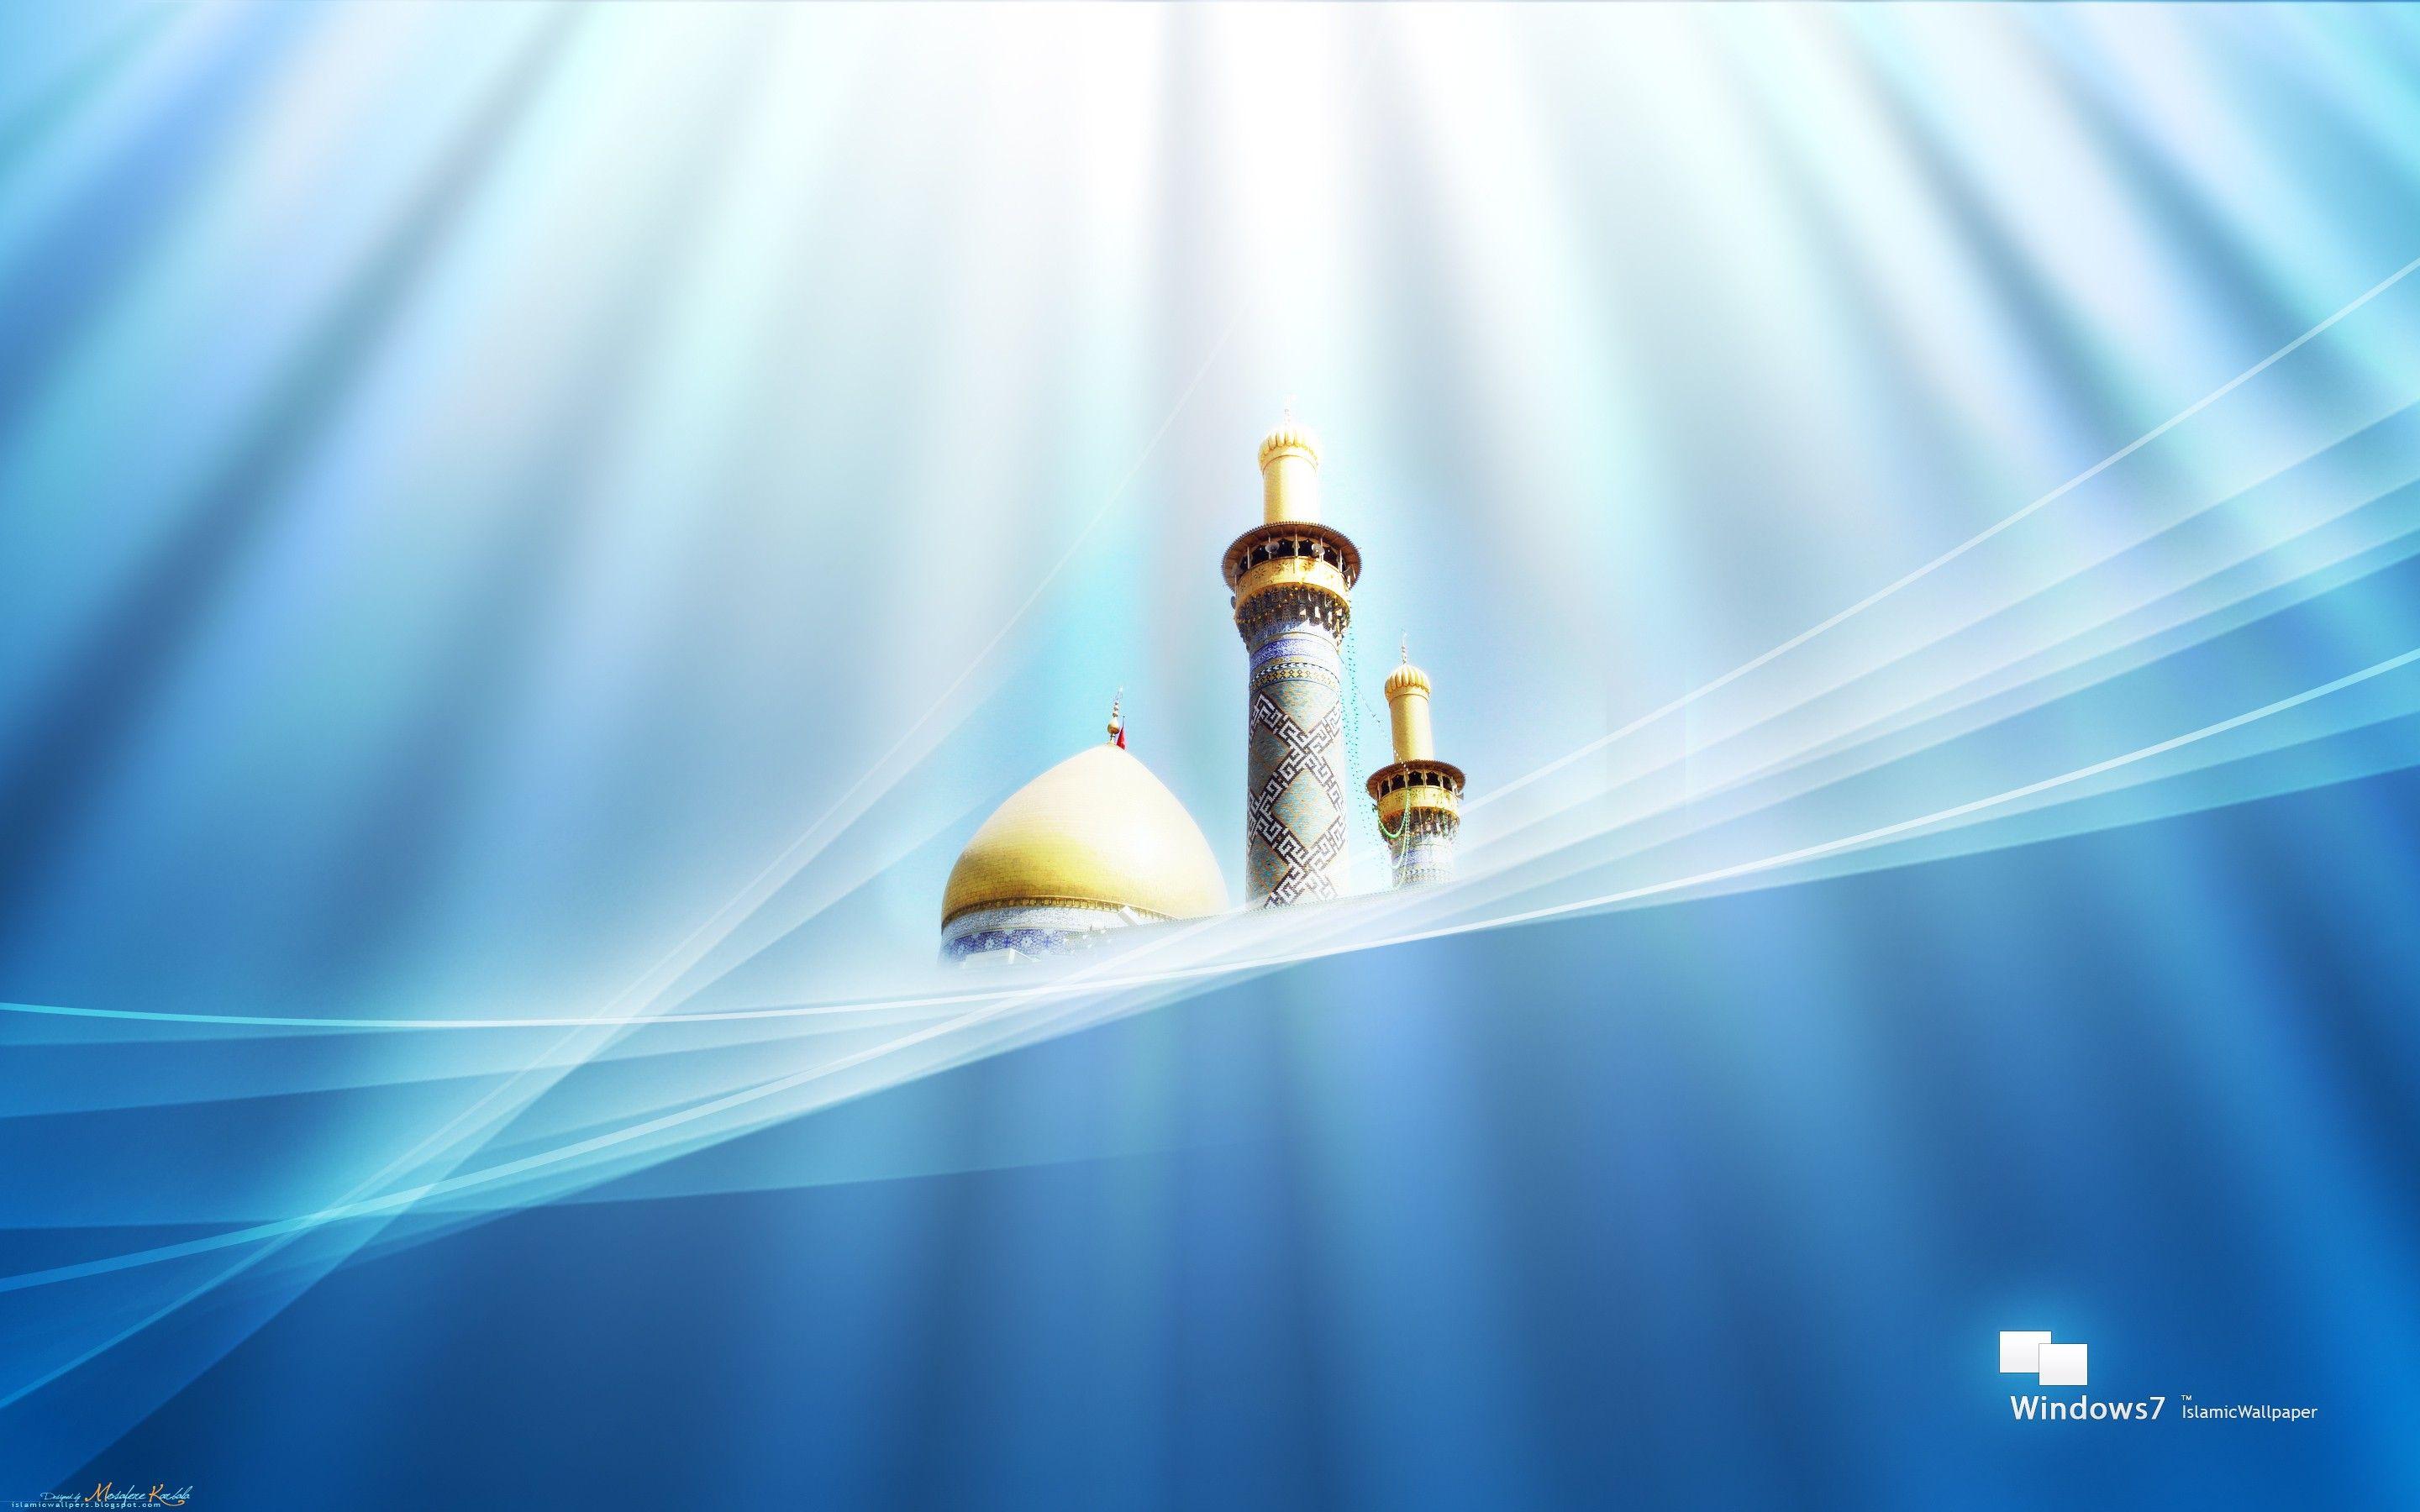 Islamic Background Image